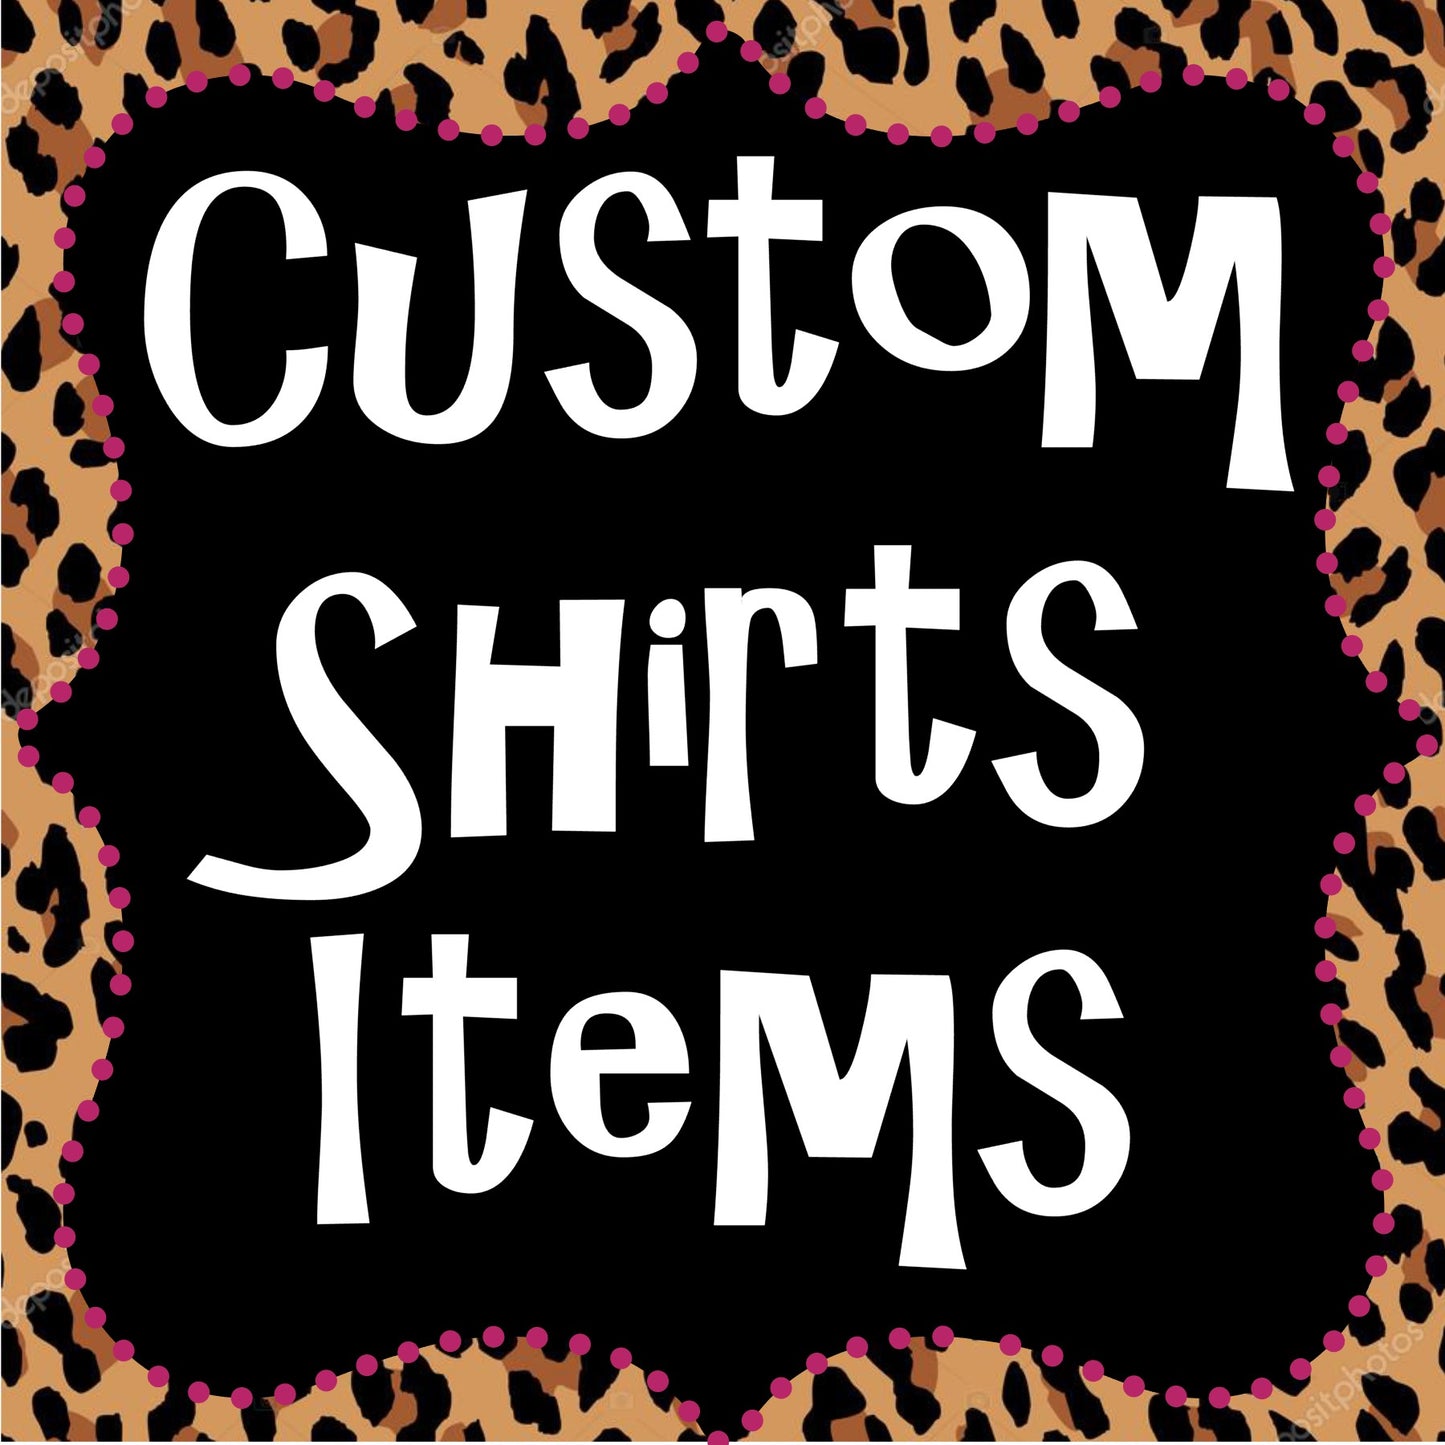 Custom Shirt or Item